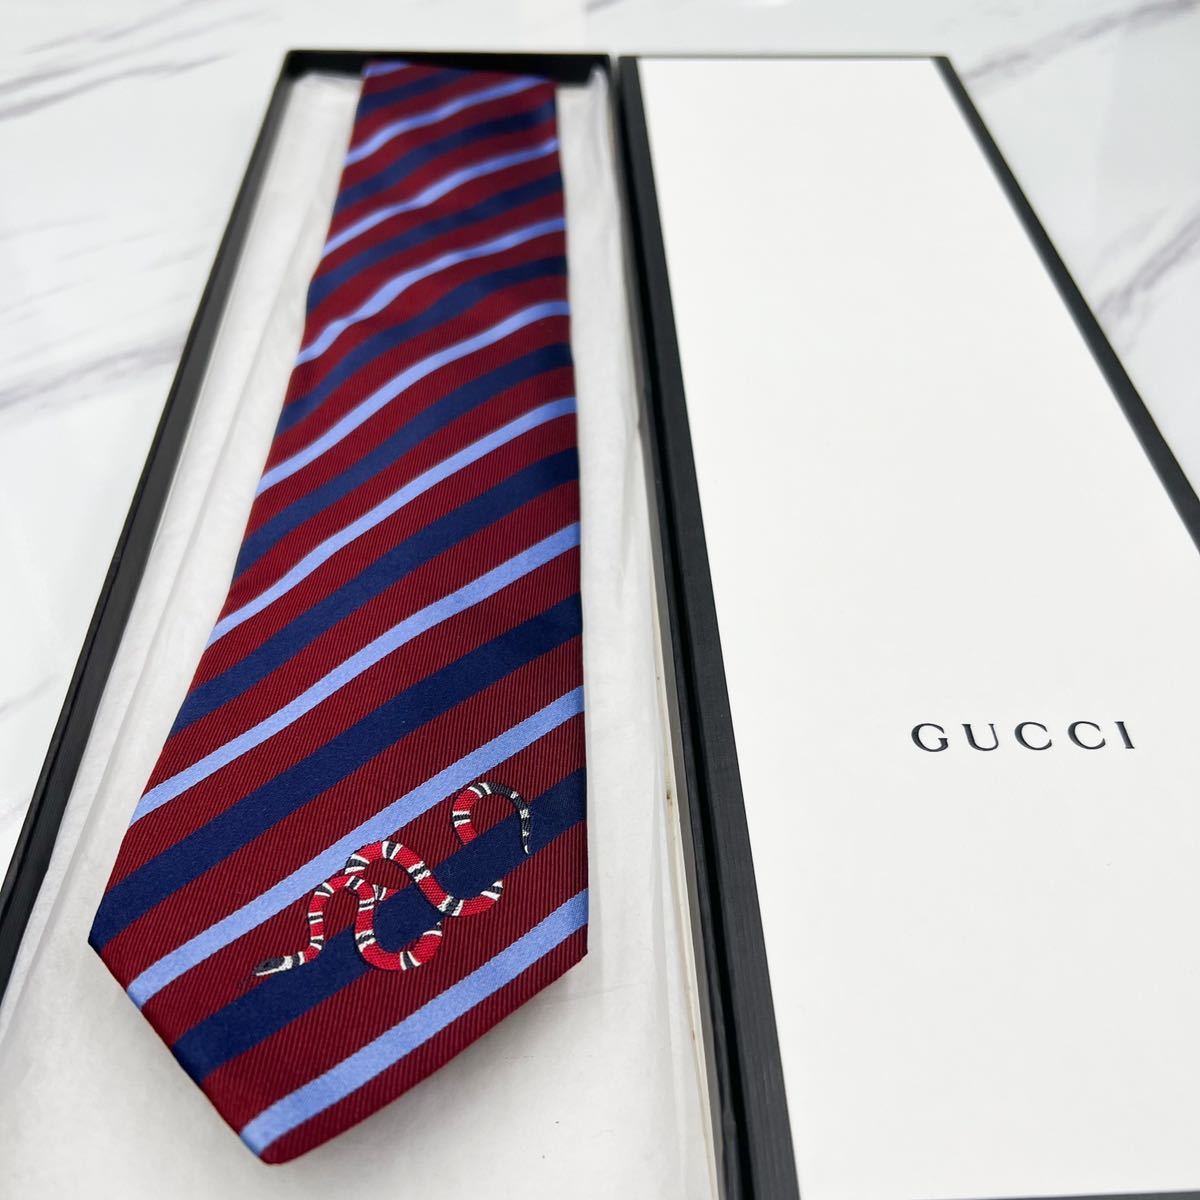 タイです】 Gucci - gucci スネーク ネクタイの通販 by s7s7s7s8888's shop｜グッチならラクマ メンズ -  shineray.com.br